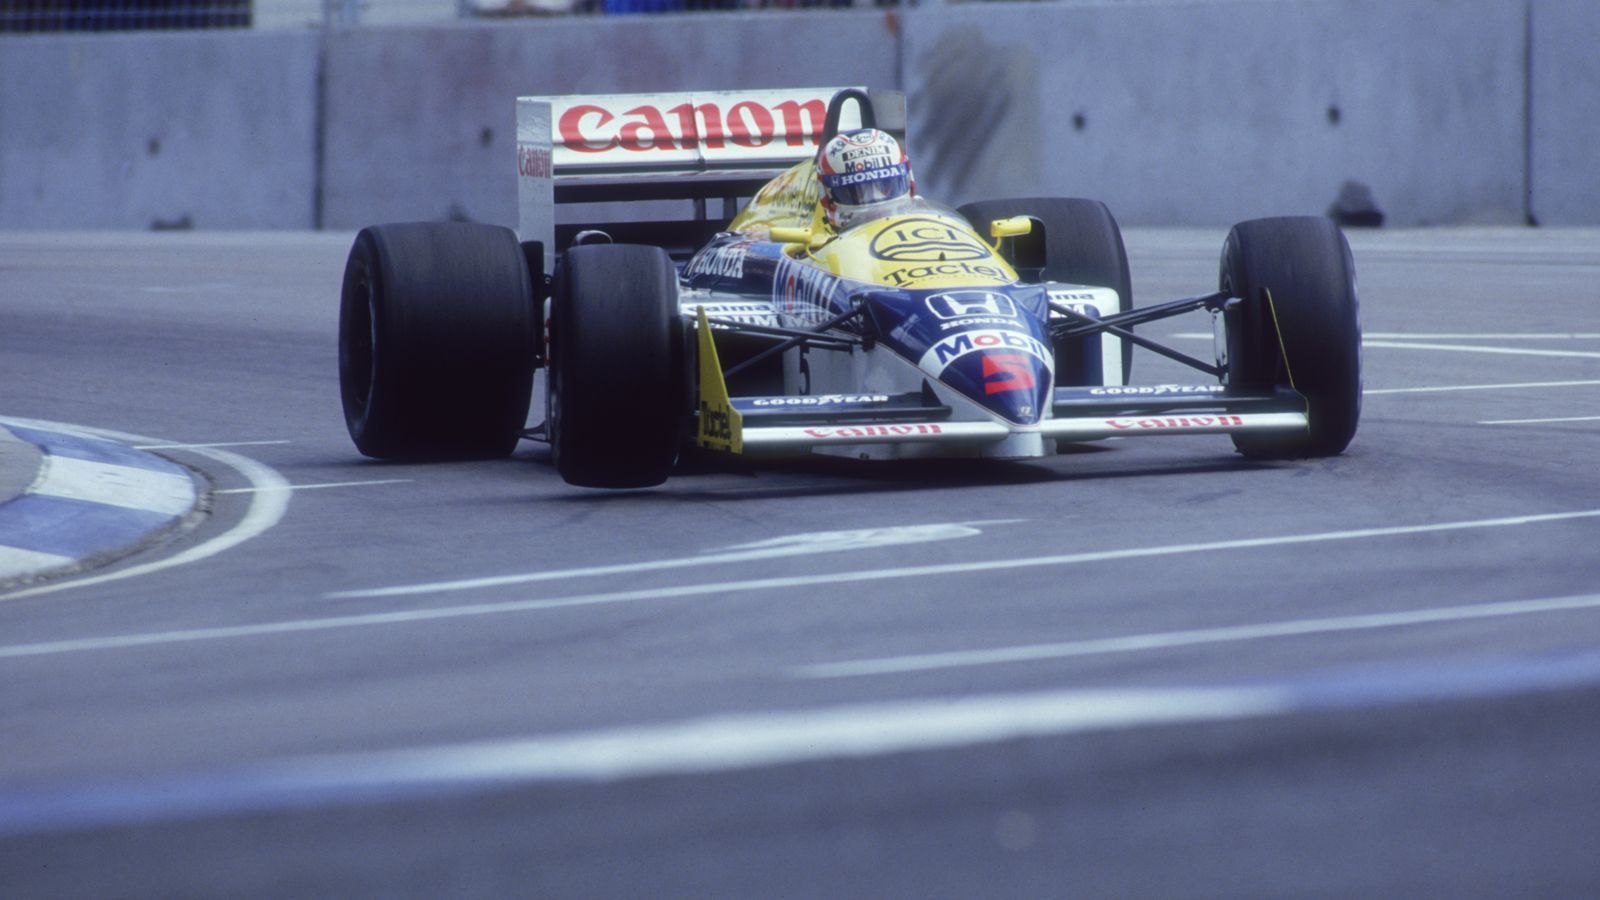 <strong>1986 - Zwei Punkte Unterschied - Alain Prost 72, Nigel Mansell 70<br></strong>In 1986 trennen Prost und Mansell letztendlich nur zwei Punkte. Der Franzose führte seinen McLaren-TAG-Porsche vor beiden&nbsp;Williams-Hondas knapp zum Titel. Mansell war mit 70 Punkten nur zwei hinter Prost, während Teamkollege Nelson Piquet auf 69 kam.&nbsp;